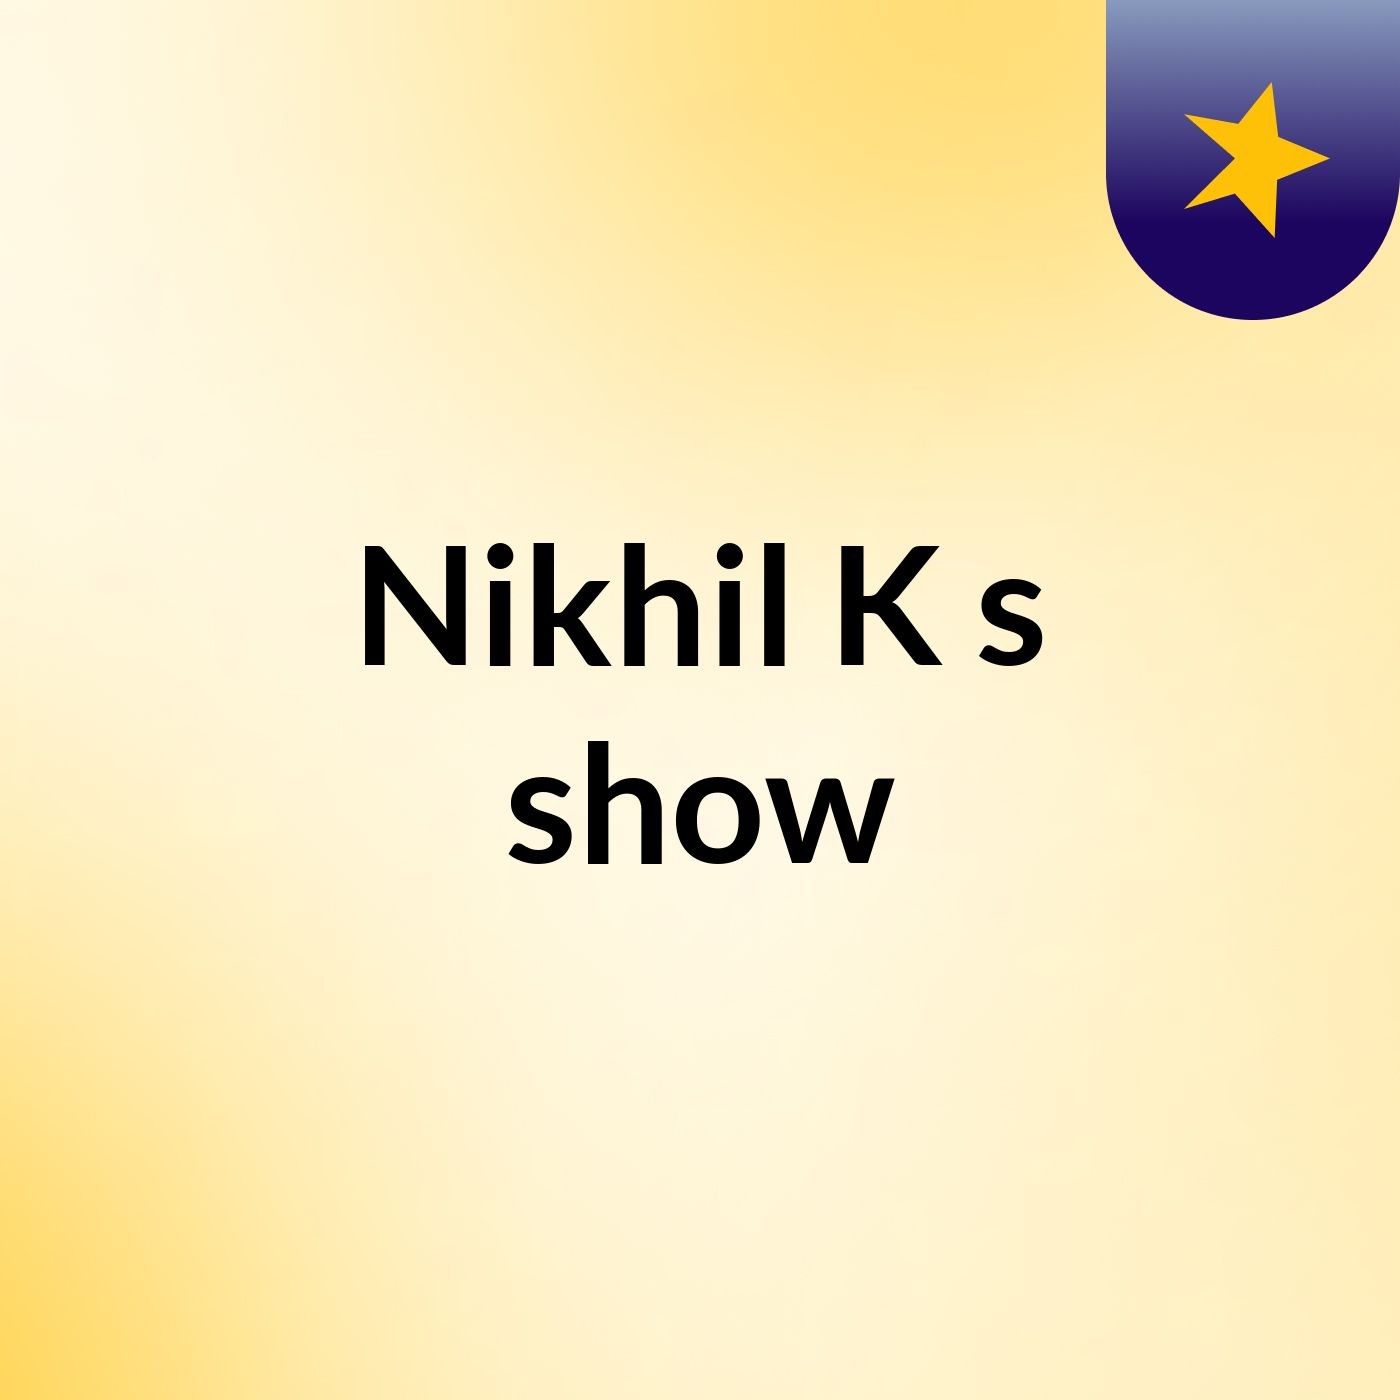 Nikhil K's show